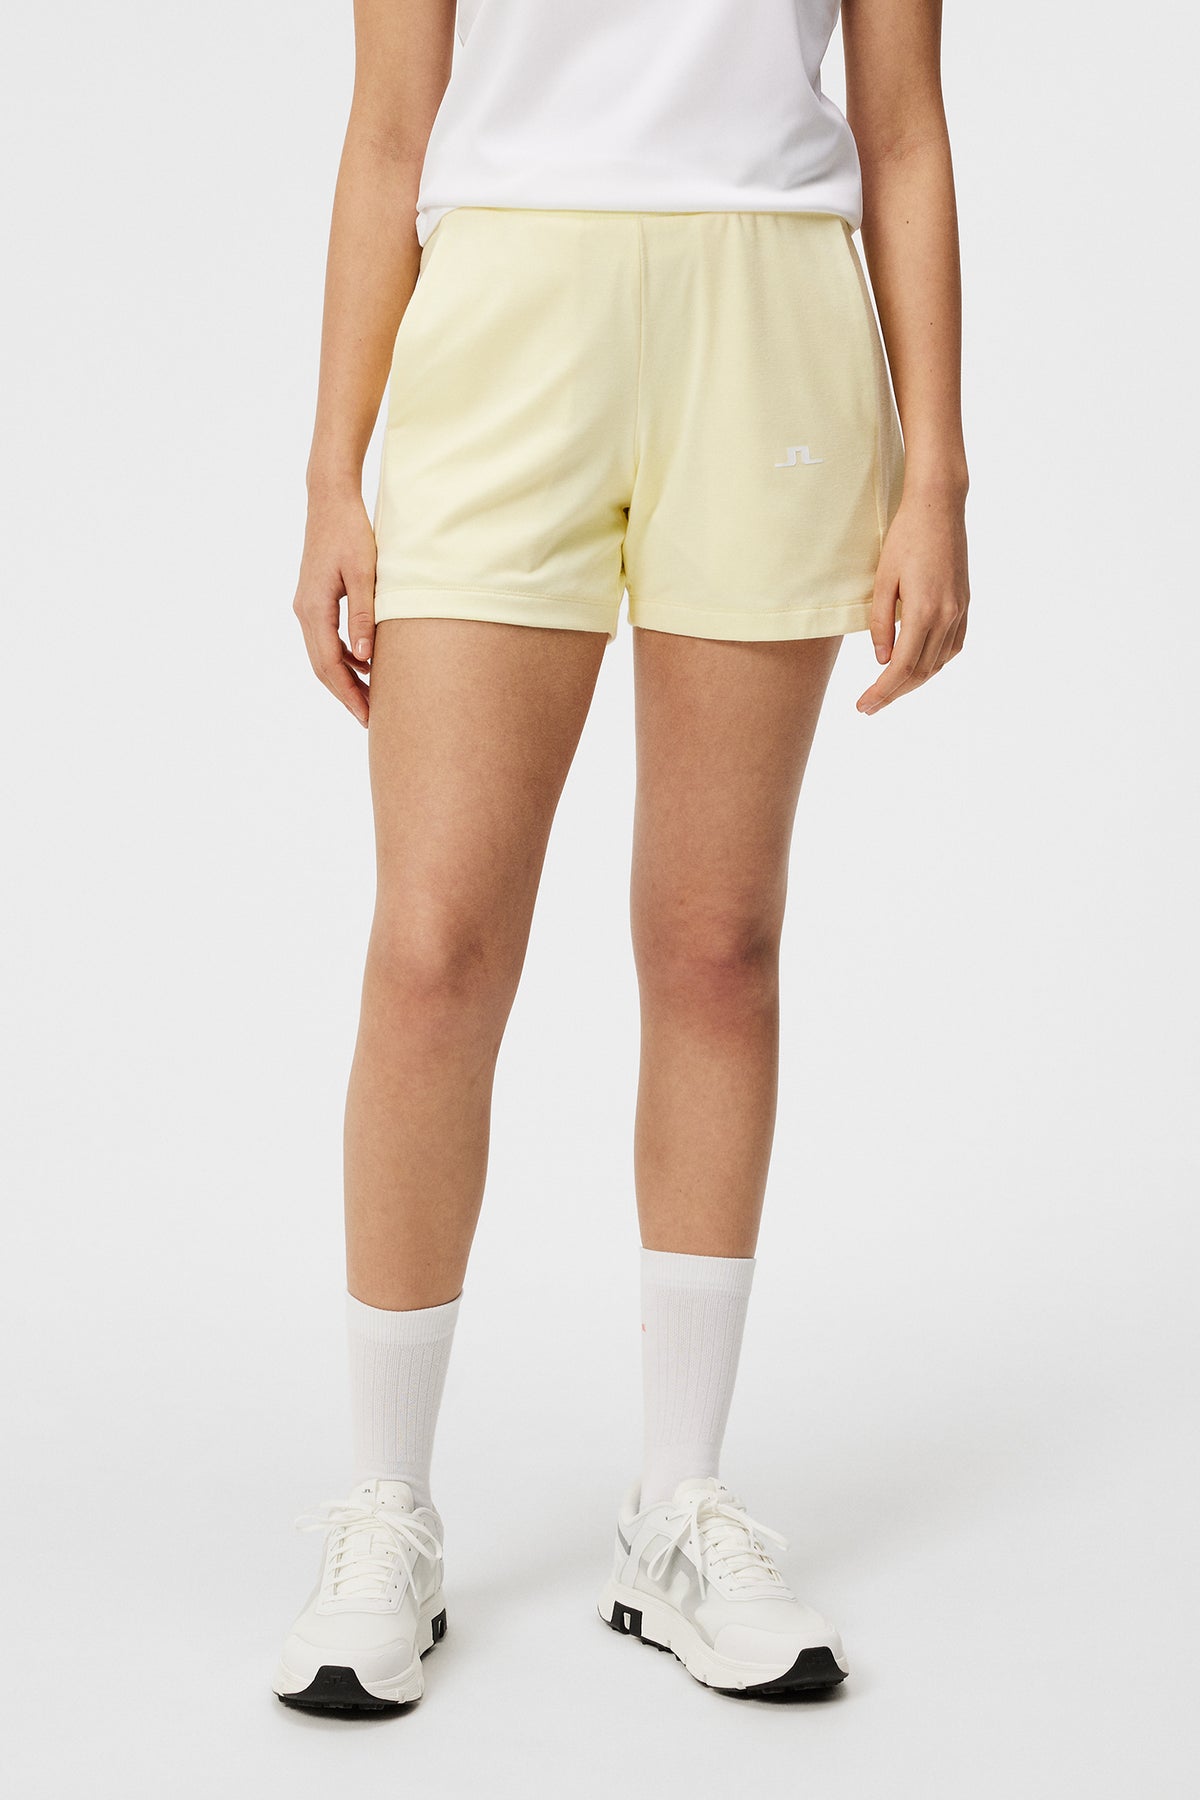 Vice Shorts / Wax Yellow